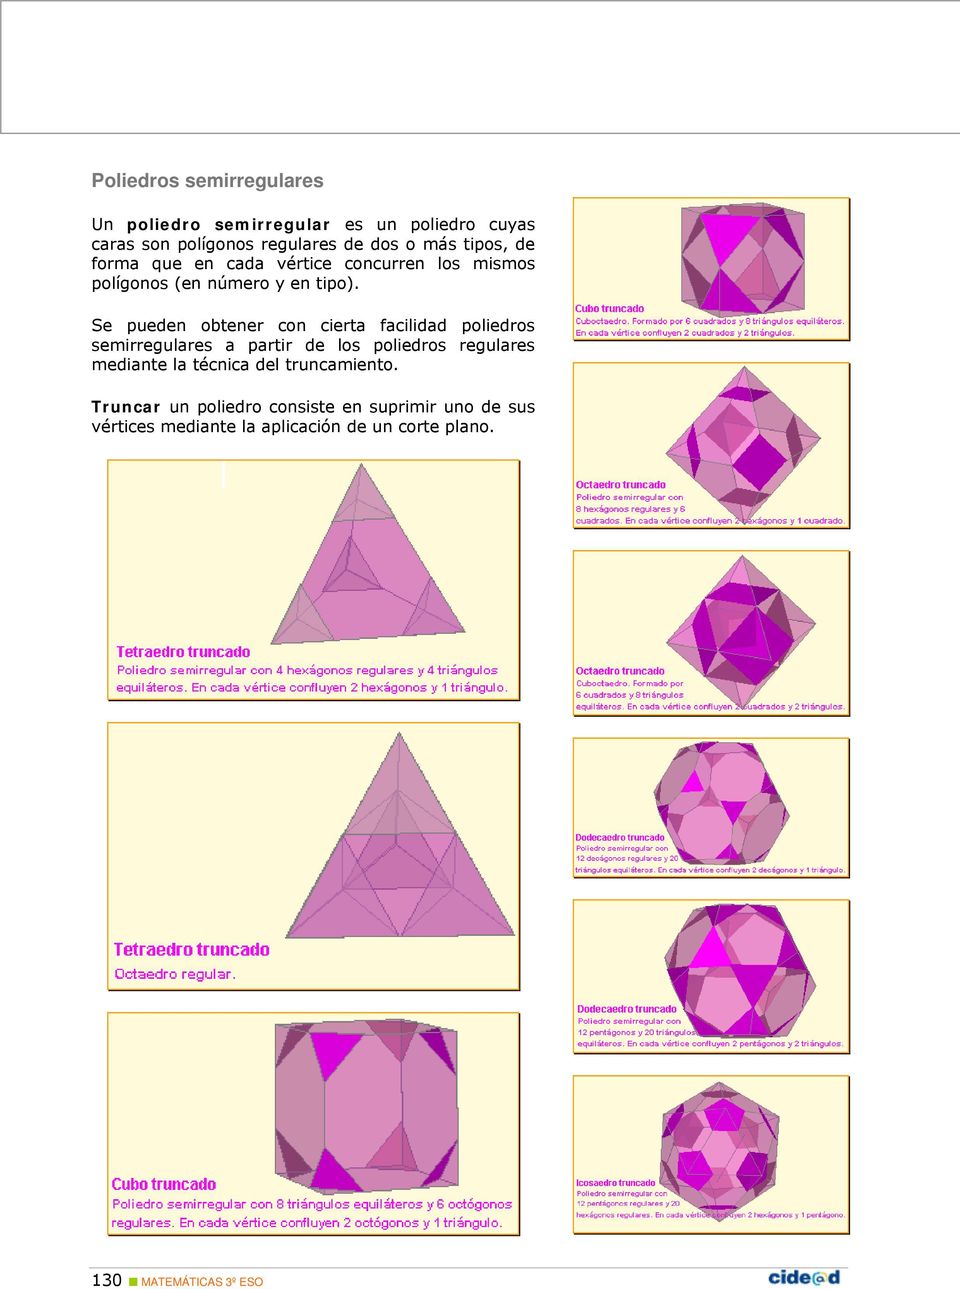 Se pueden obtener con cierta facilidad poliedros semirregulares a partir de los poliedros regulares mediante la